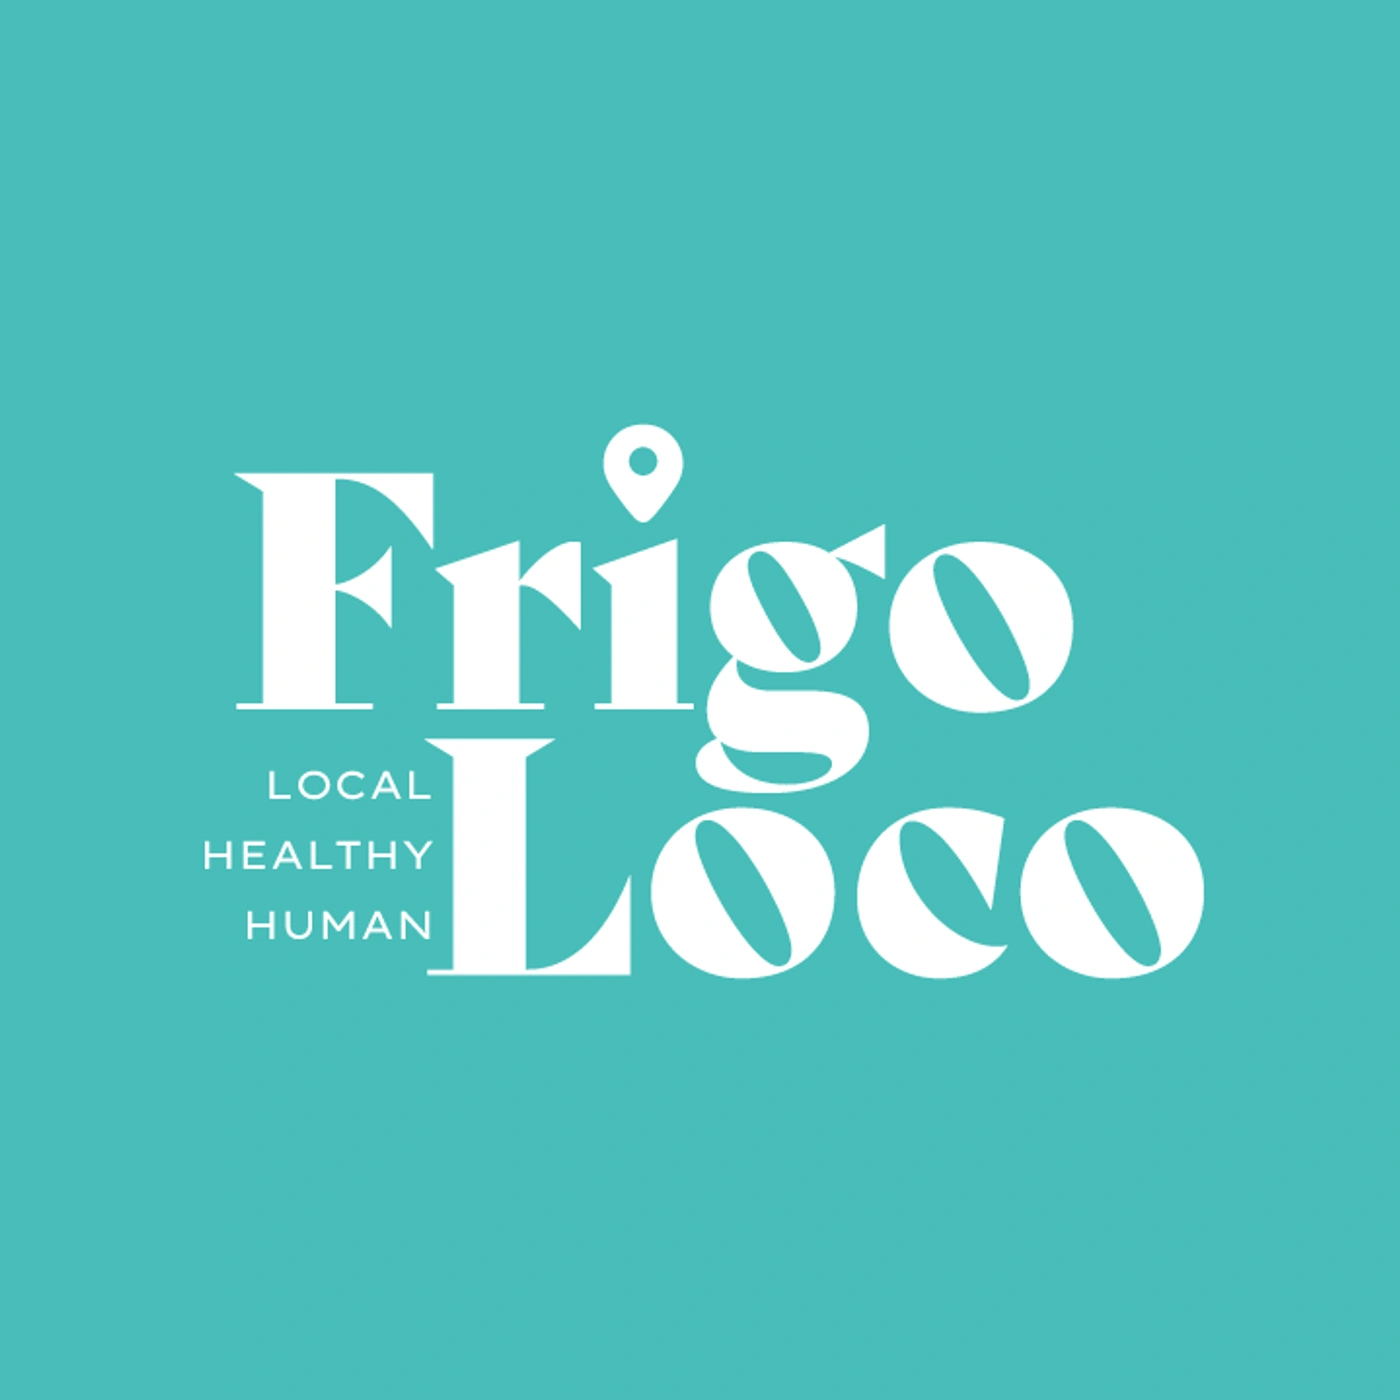 image de l'entreprise Frigo Loco pour le poste de Job étudiant - Livreur 